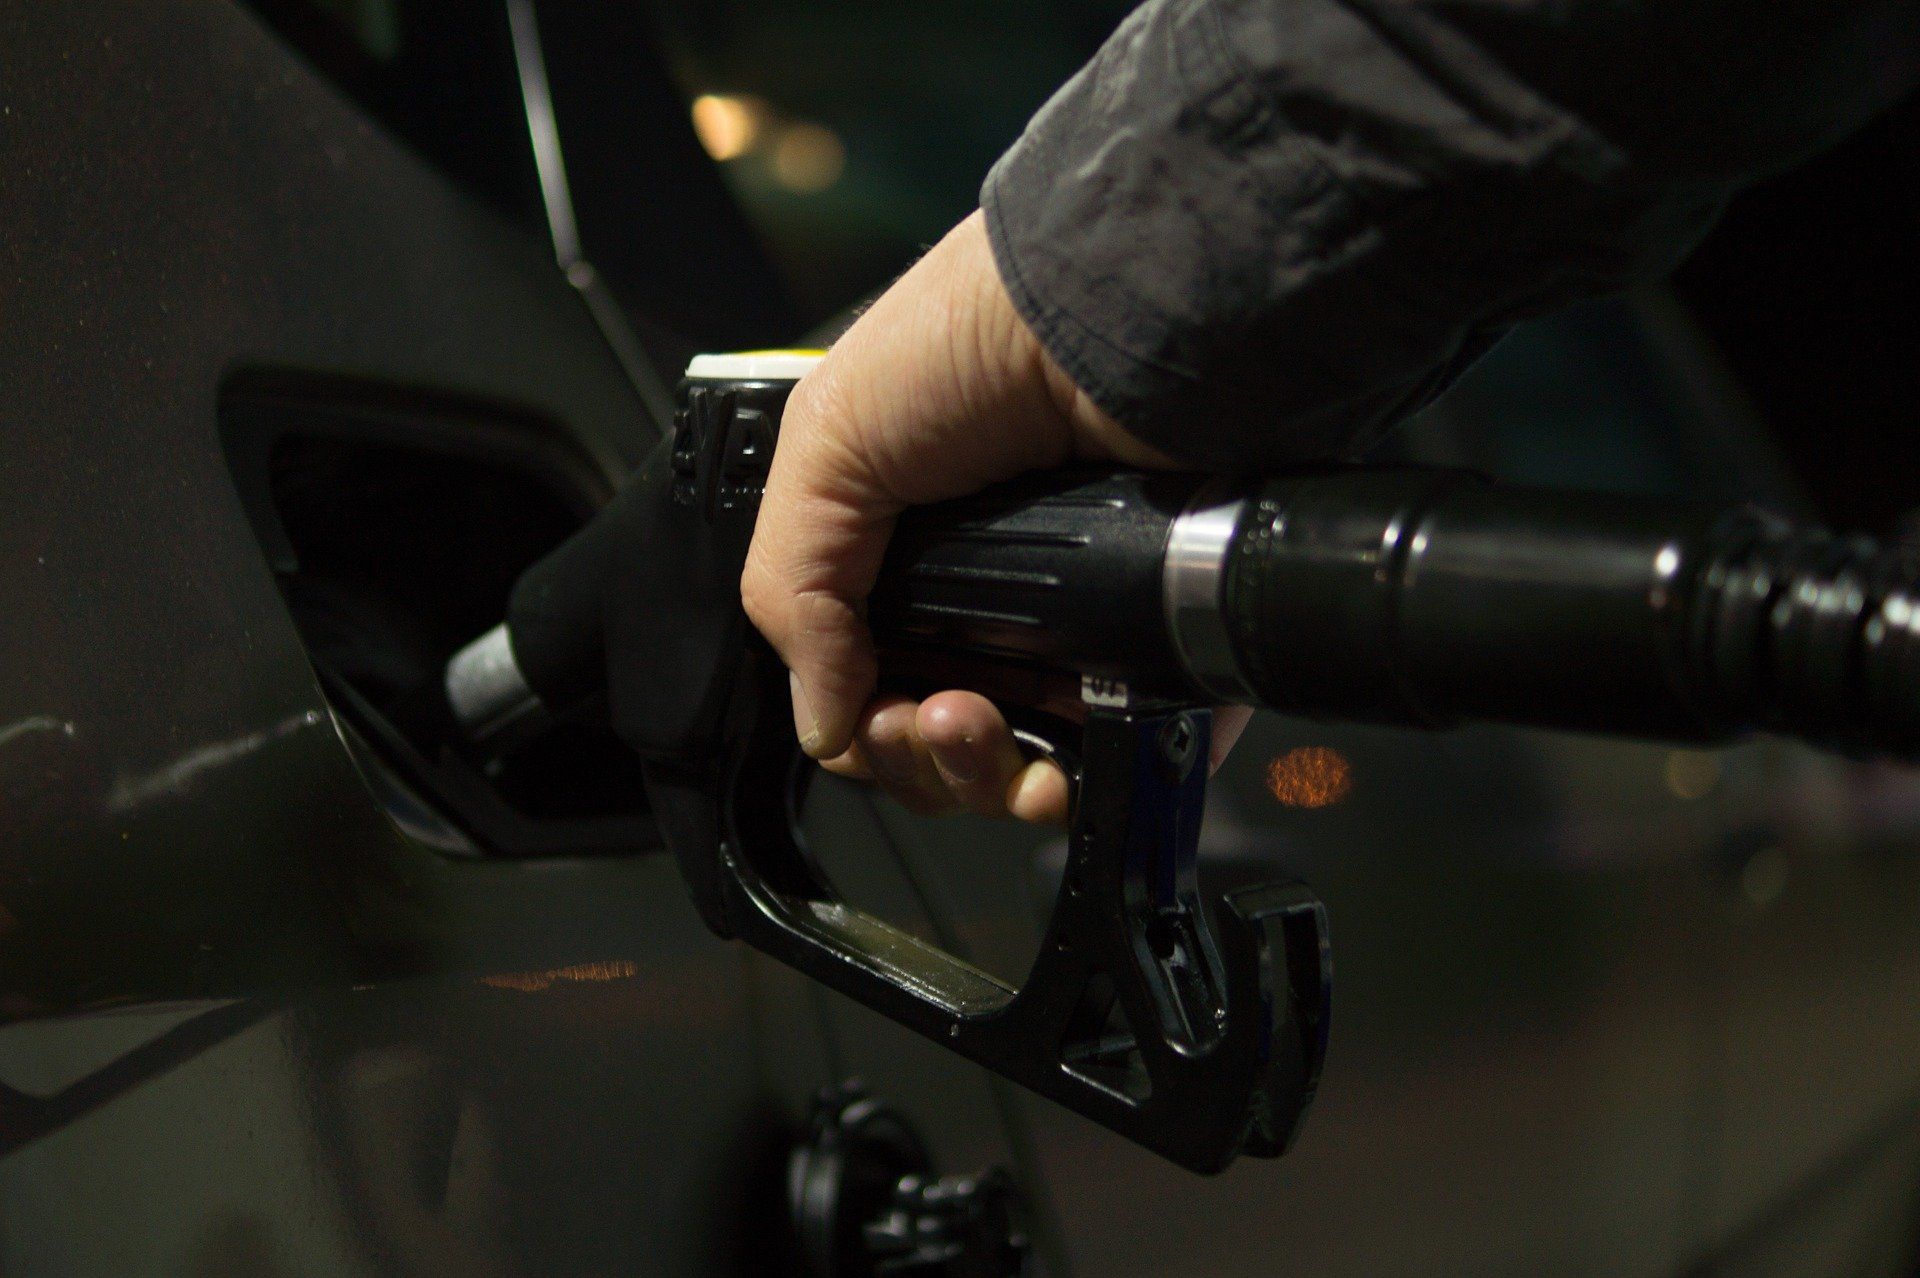 Fuel price July 1, 2022: Petrol Rs 96.72, diesel Rs 89.62 in Delhi